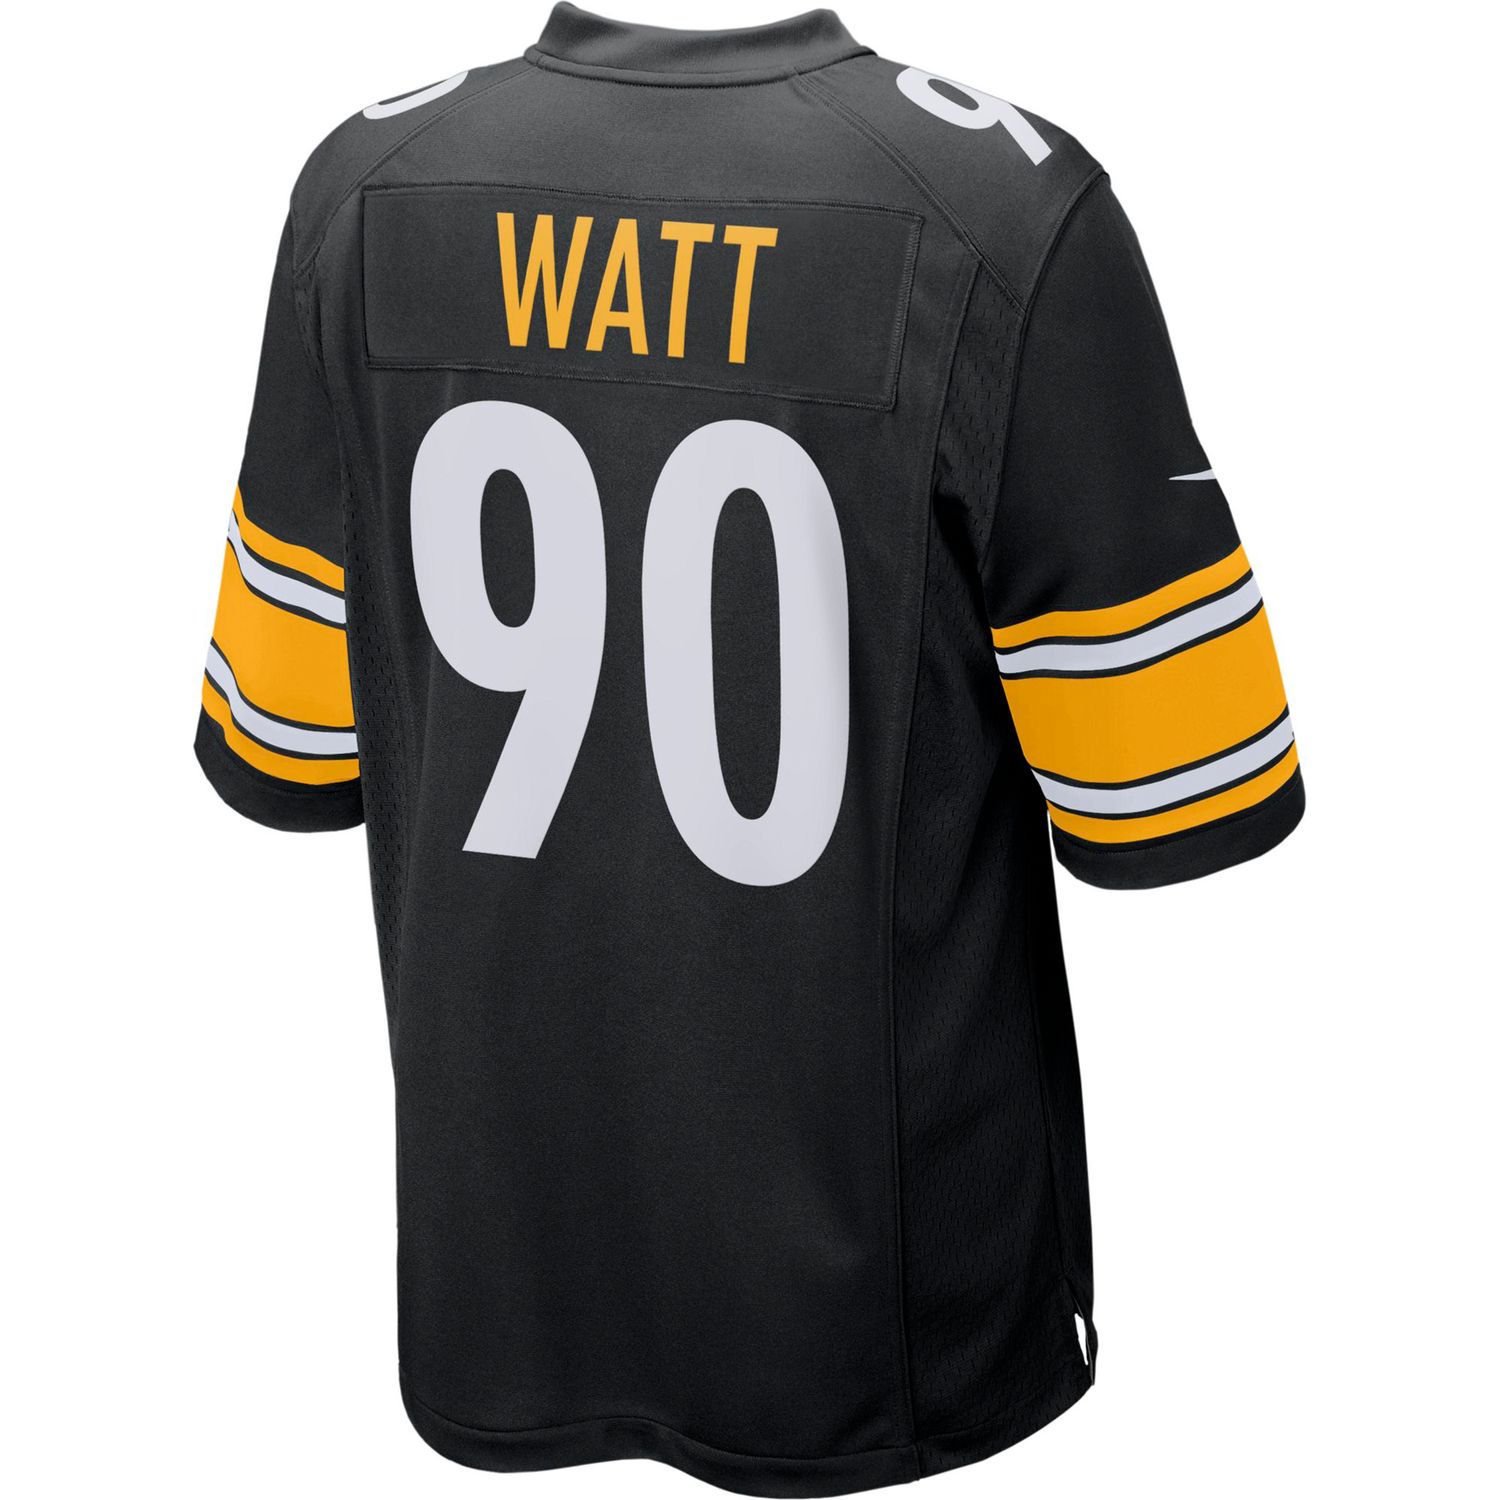 Pittsburgh Steelers T.J. Watt NFL Jersey